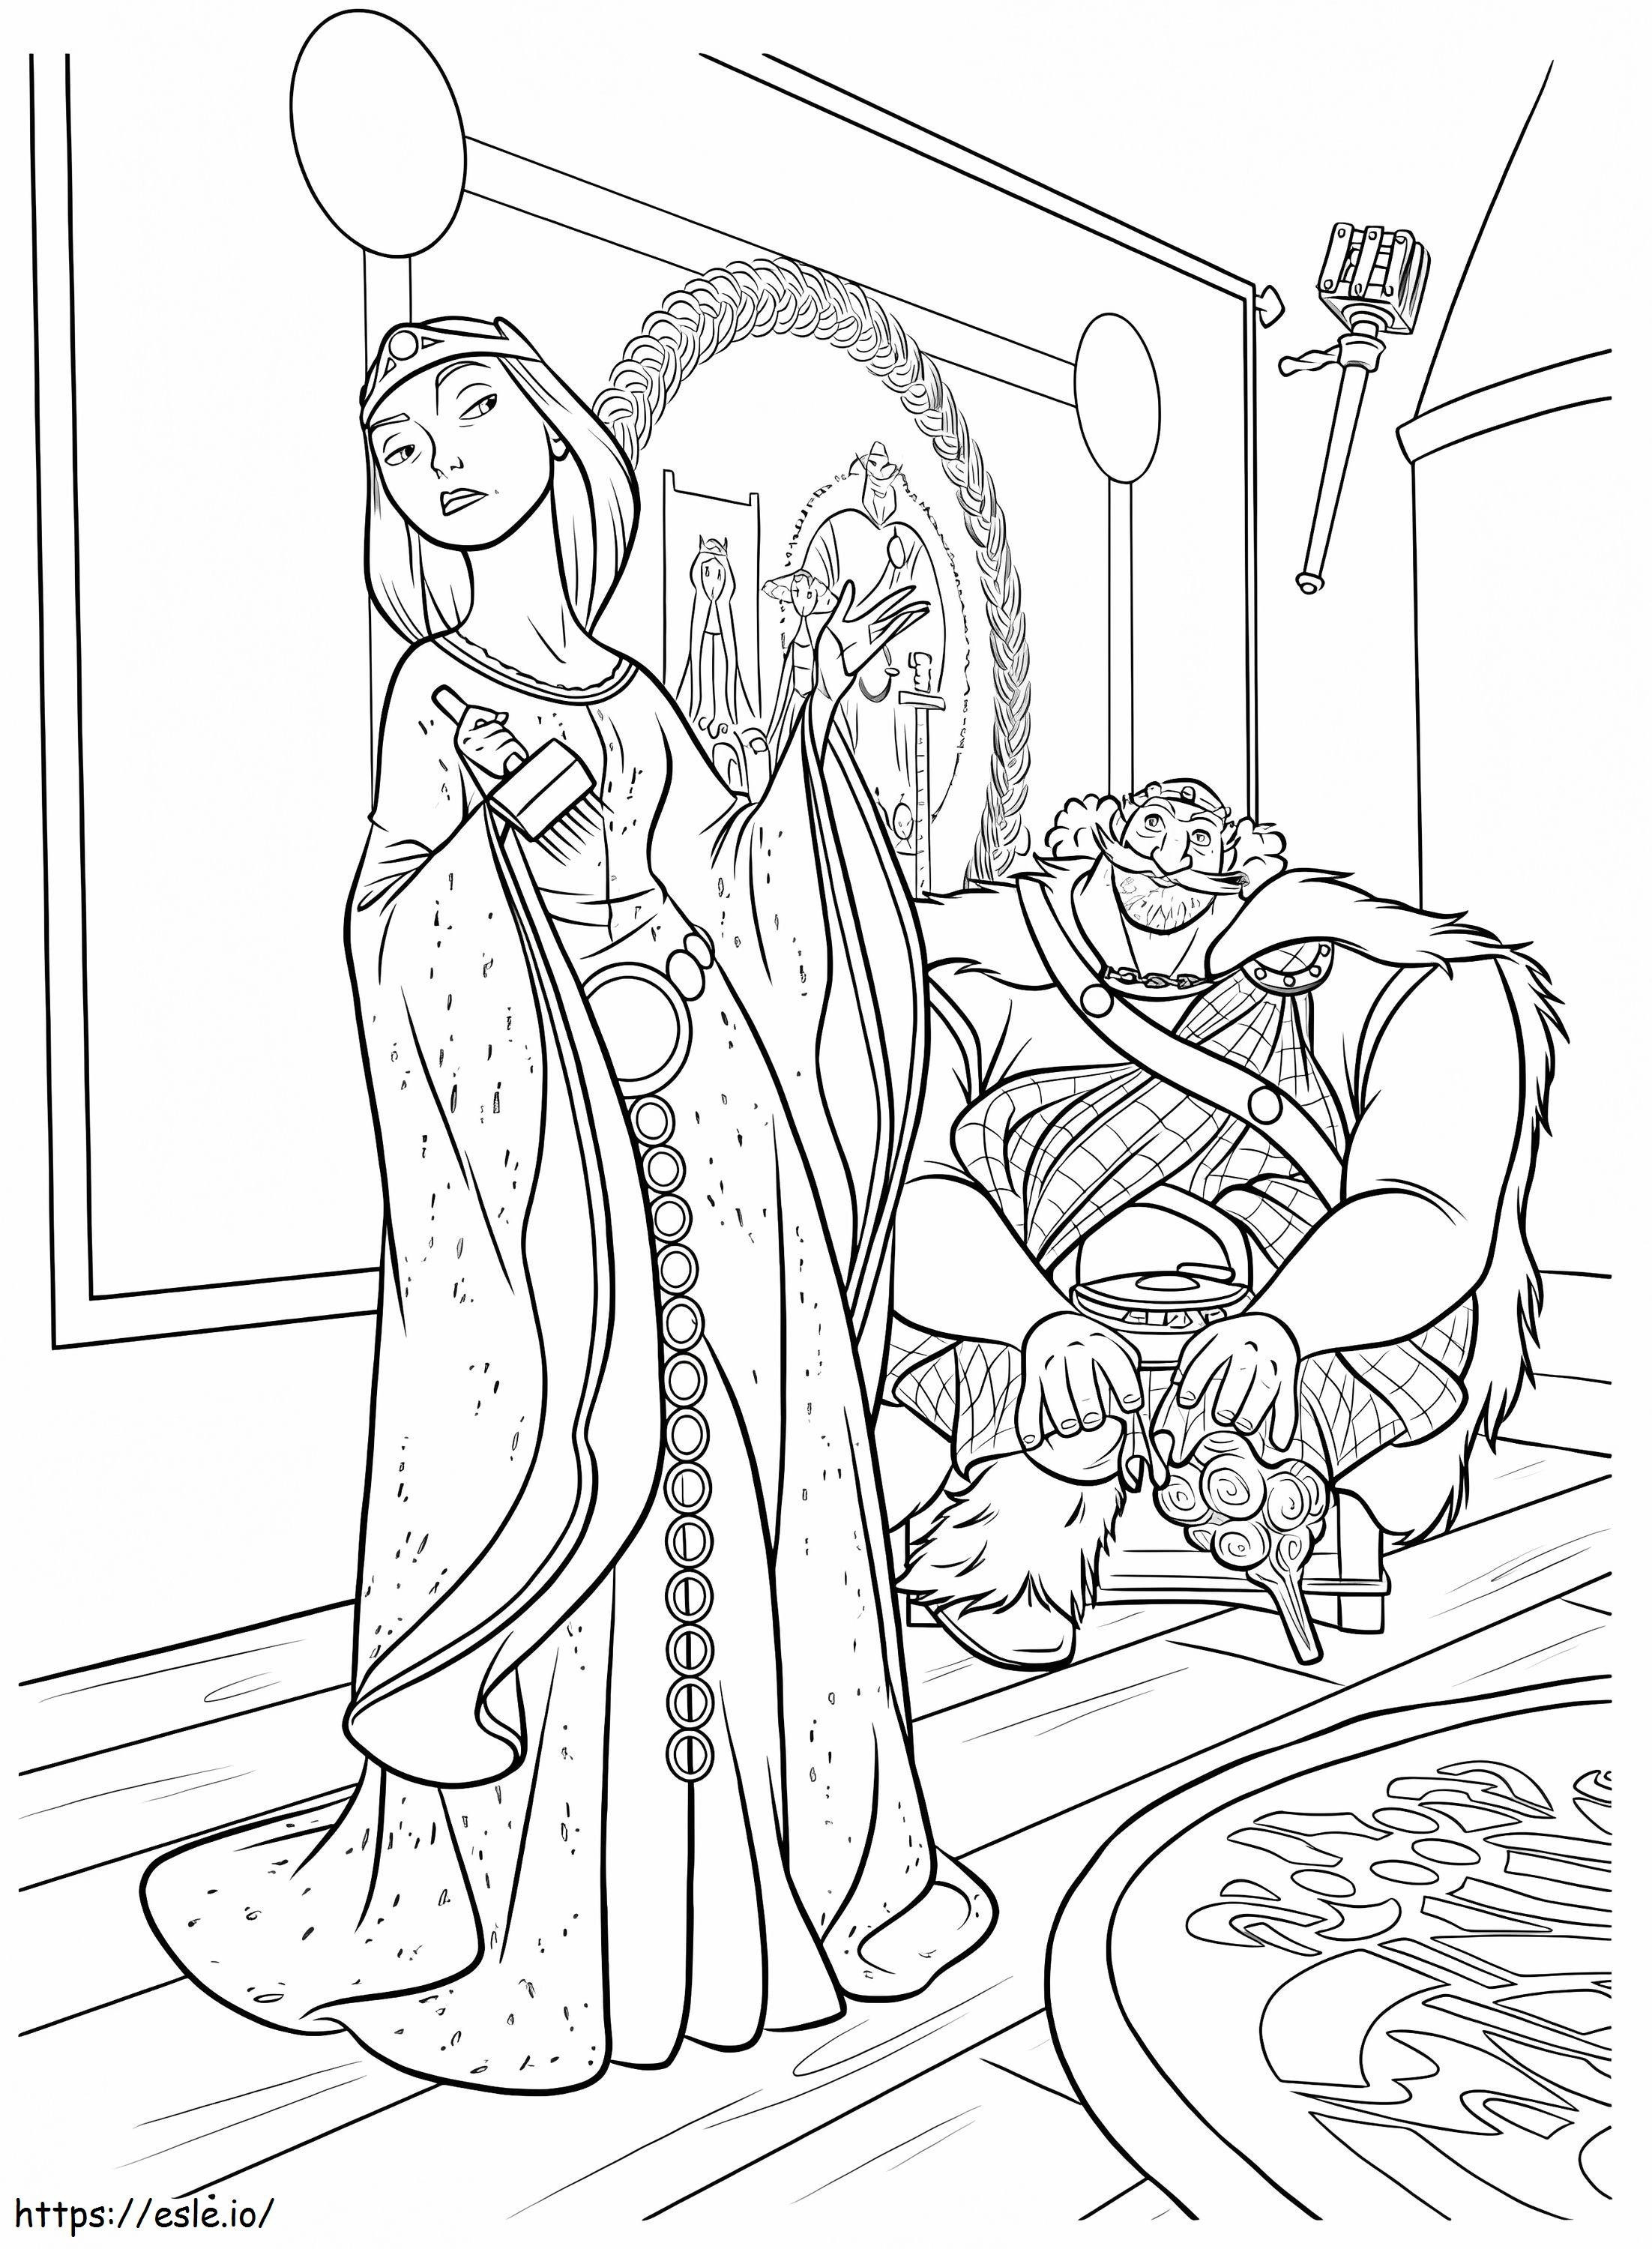 Regele Fergus așezat și regina Elinor așezată de colorat